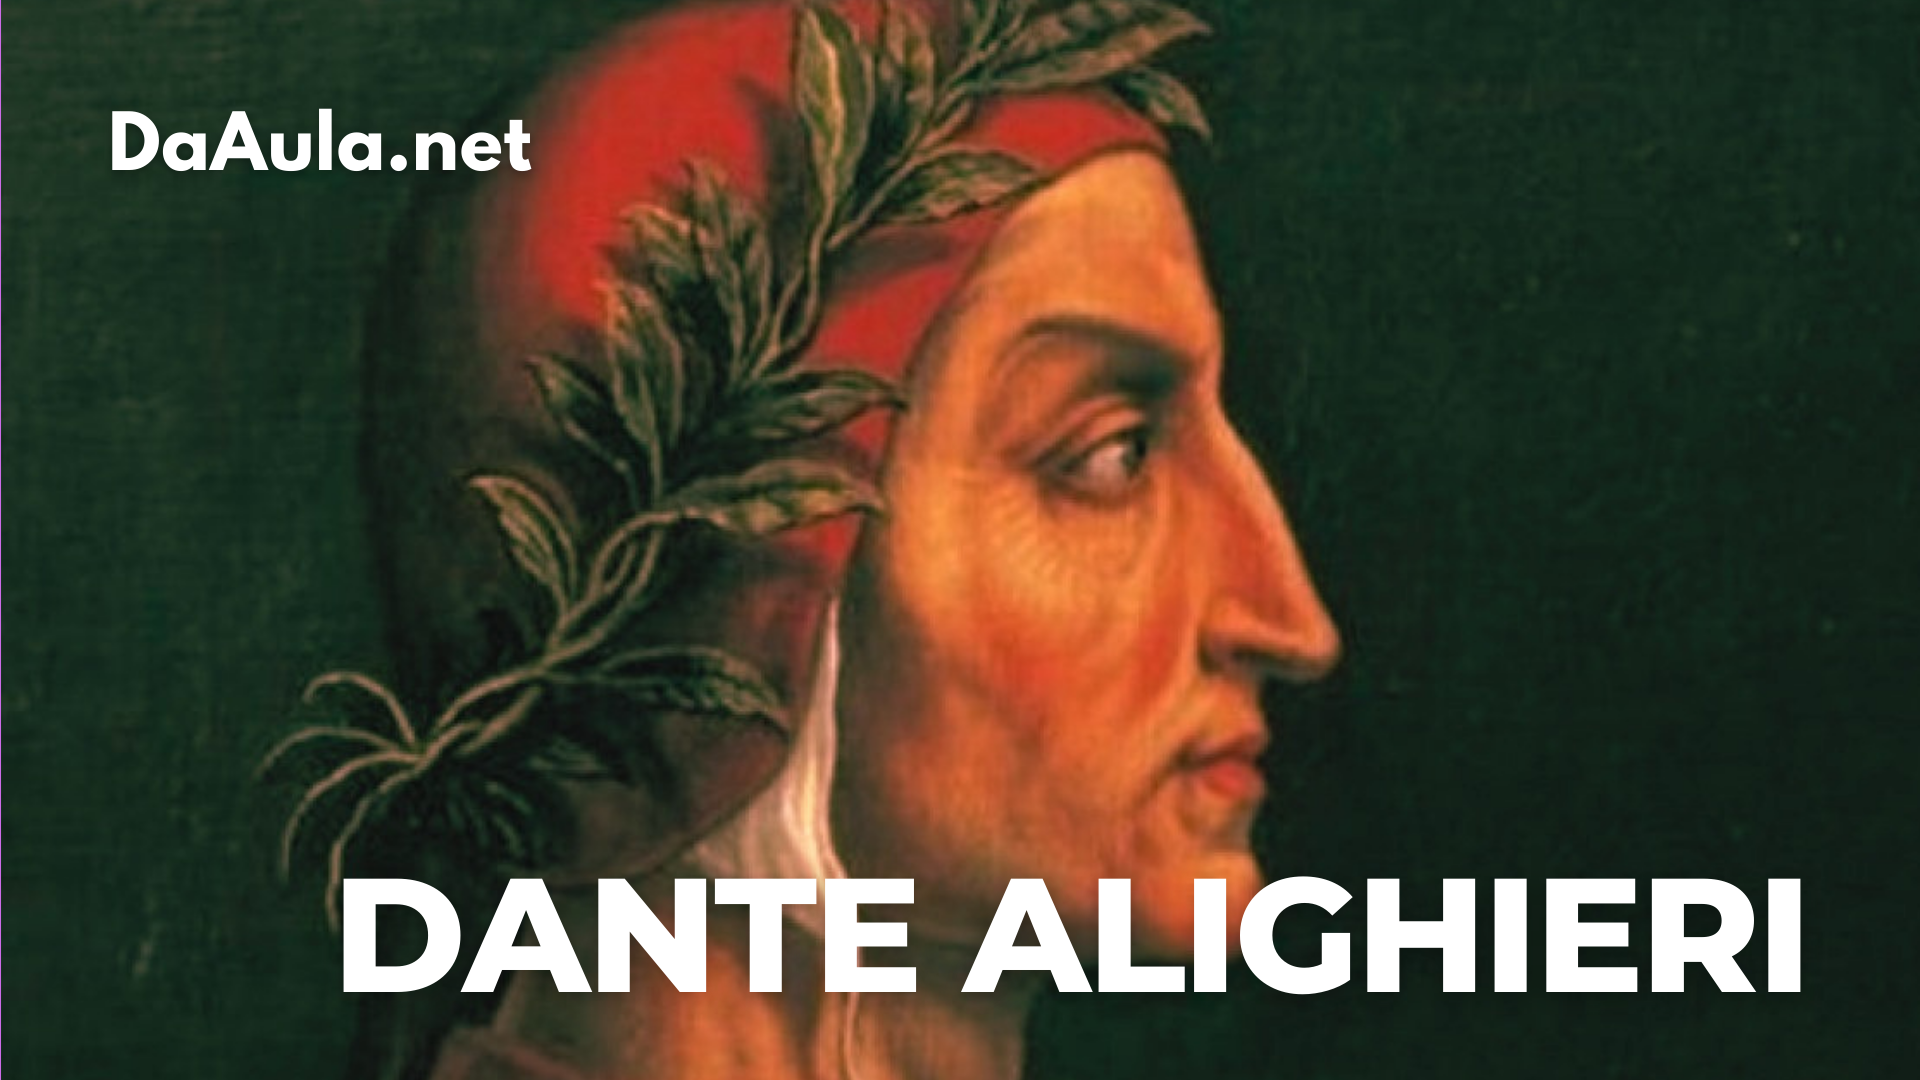 Quem foi Dante Alighieri